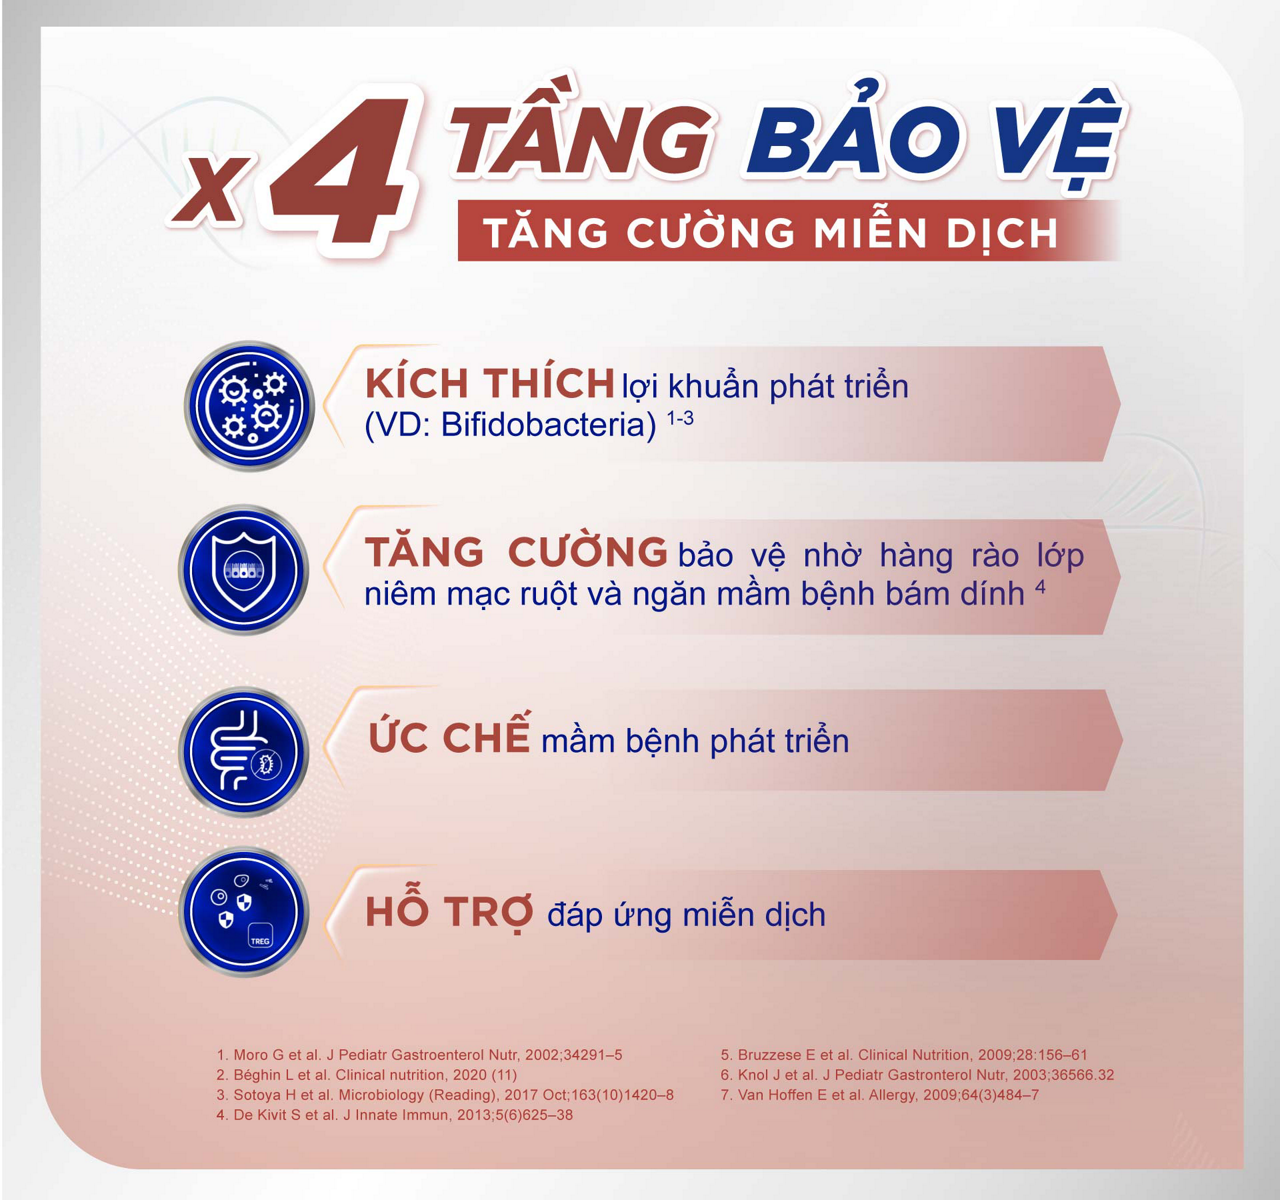 X4-TANG-BV.jpg